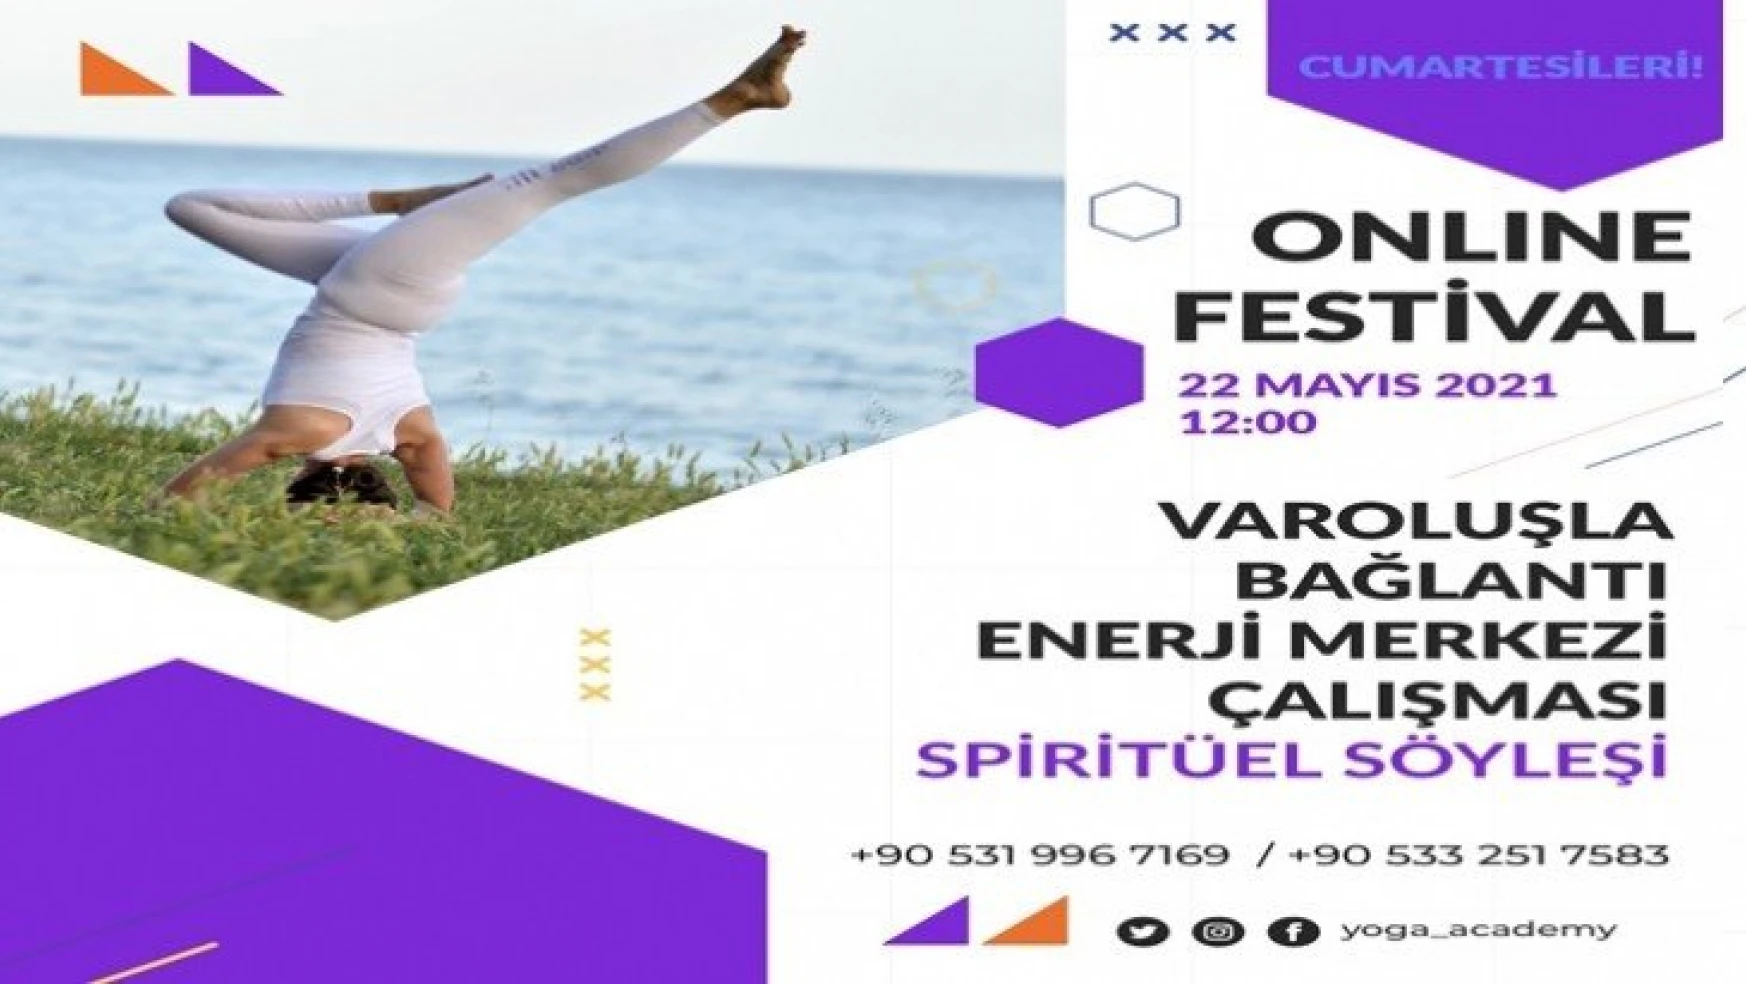 Covıd-19'un Yarattığı Strese Son Veren Festival!